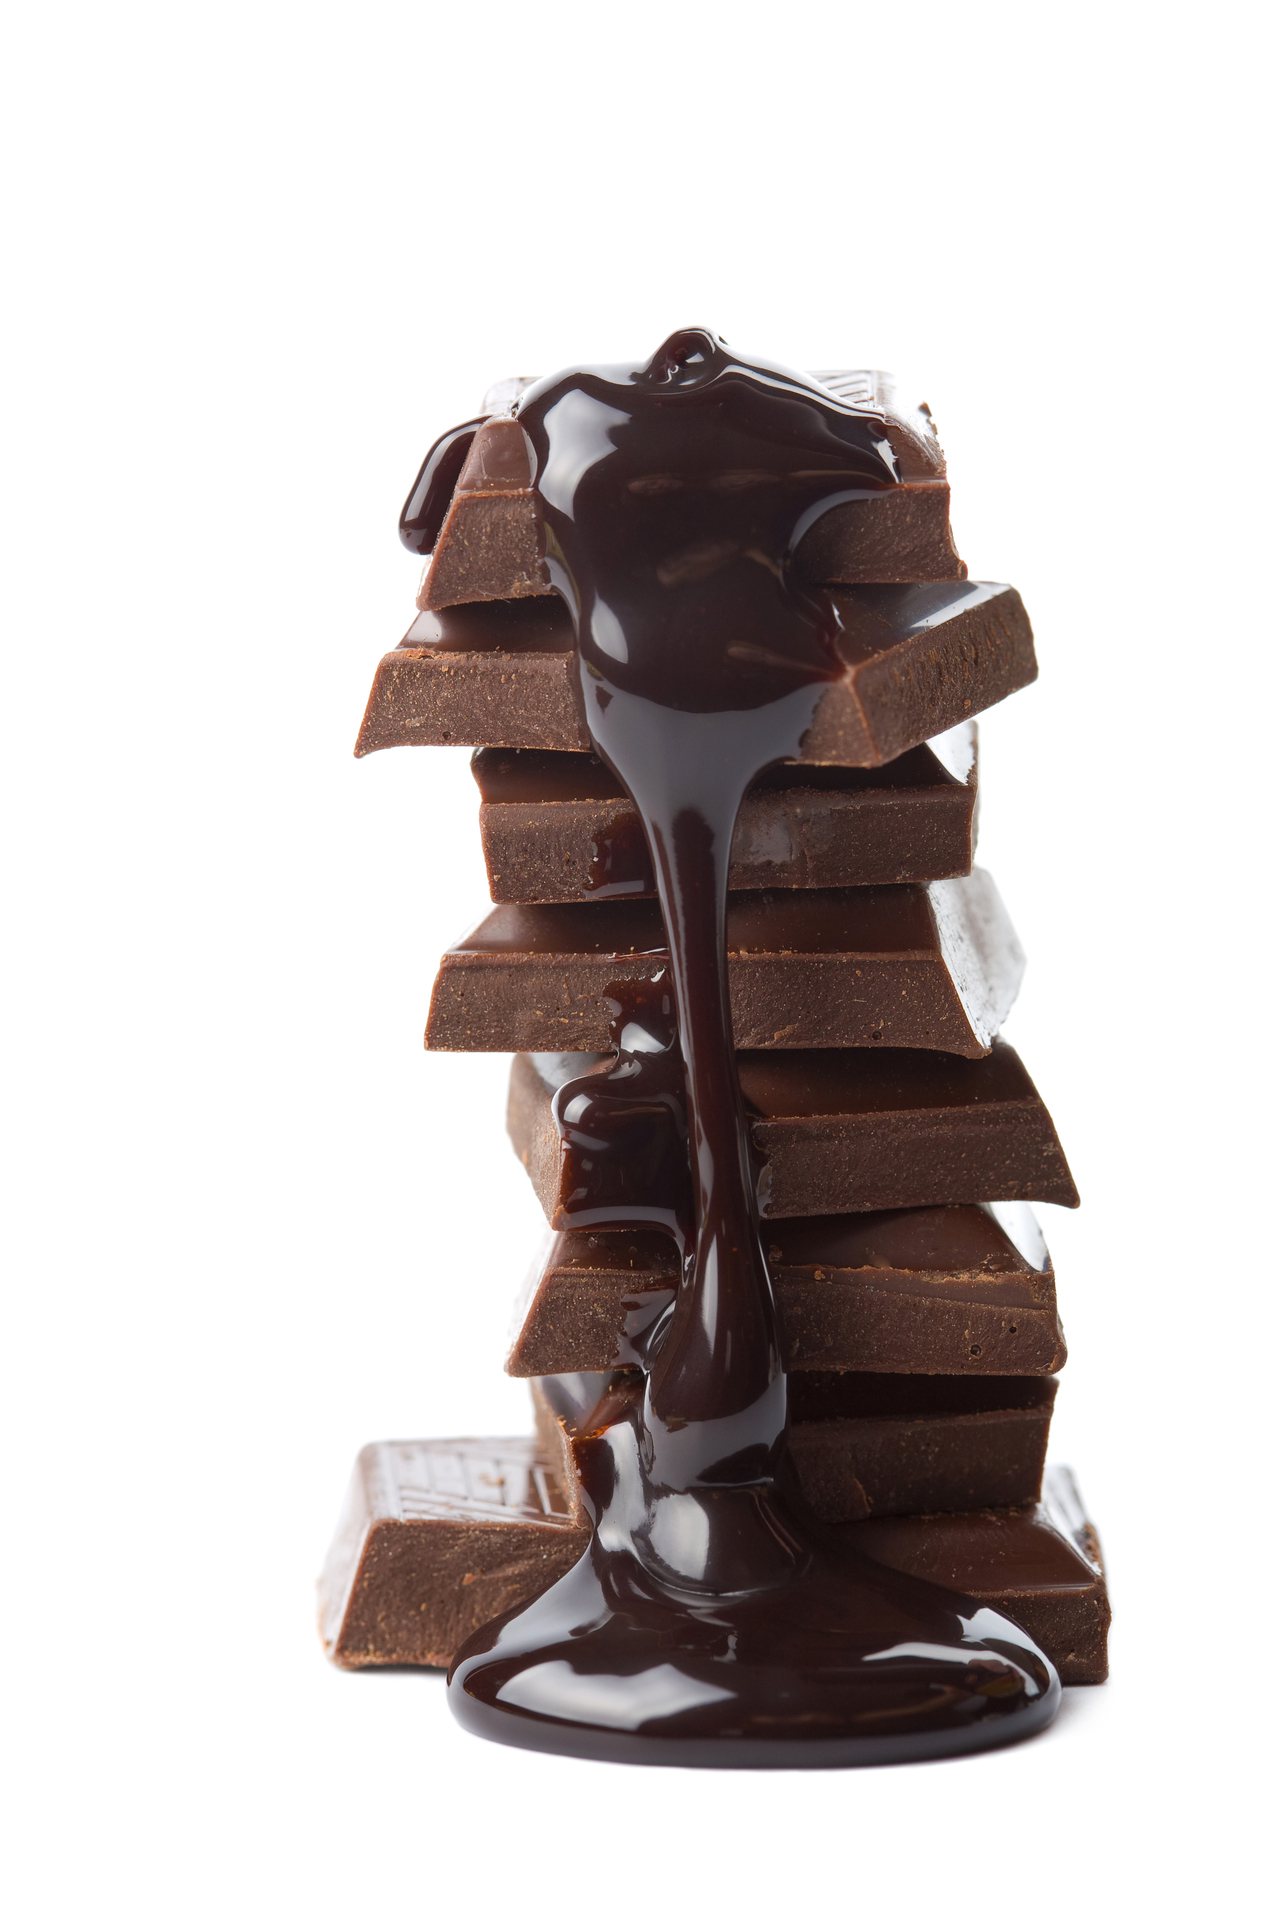 食品藥物管理署今宣布未來巧克力成分標示應清楚標明成分及內容物含量。